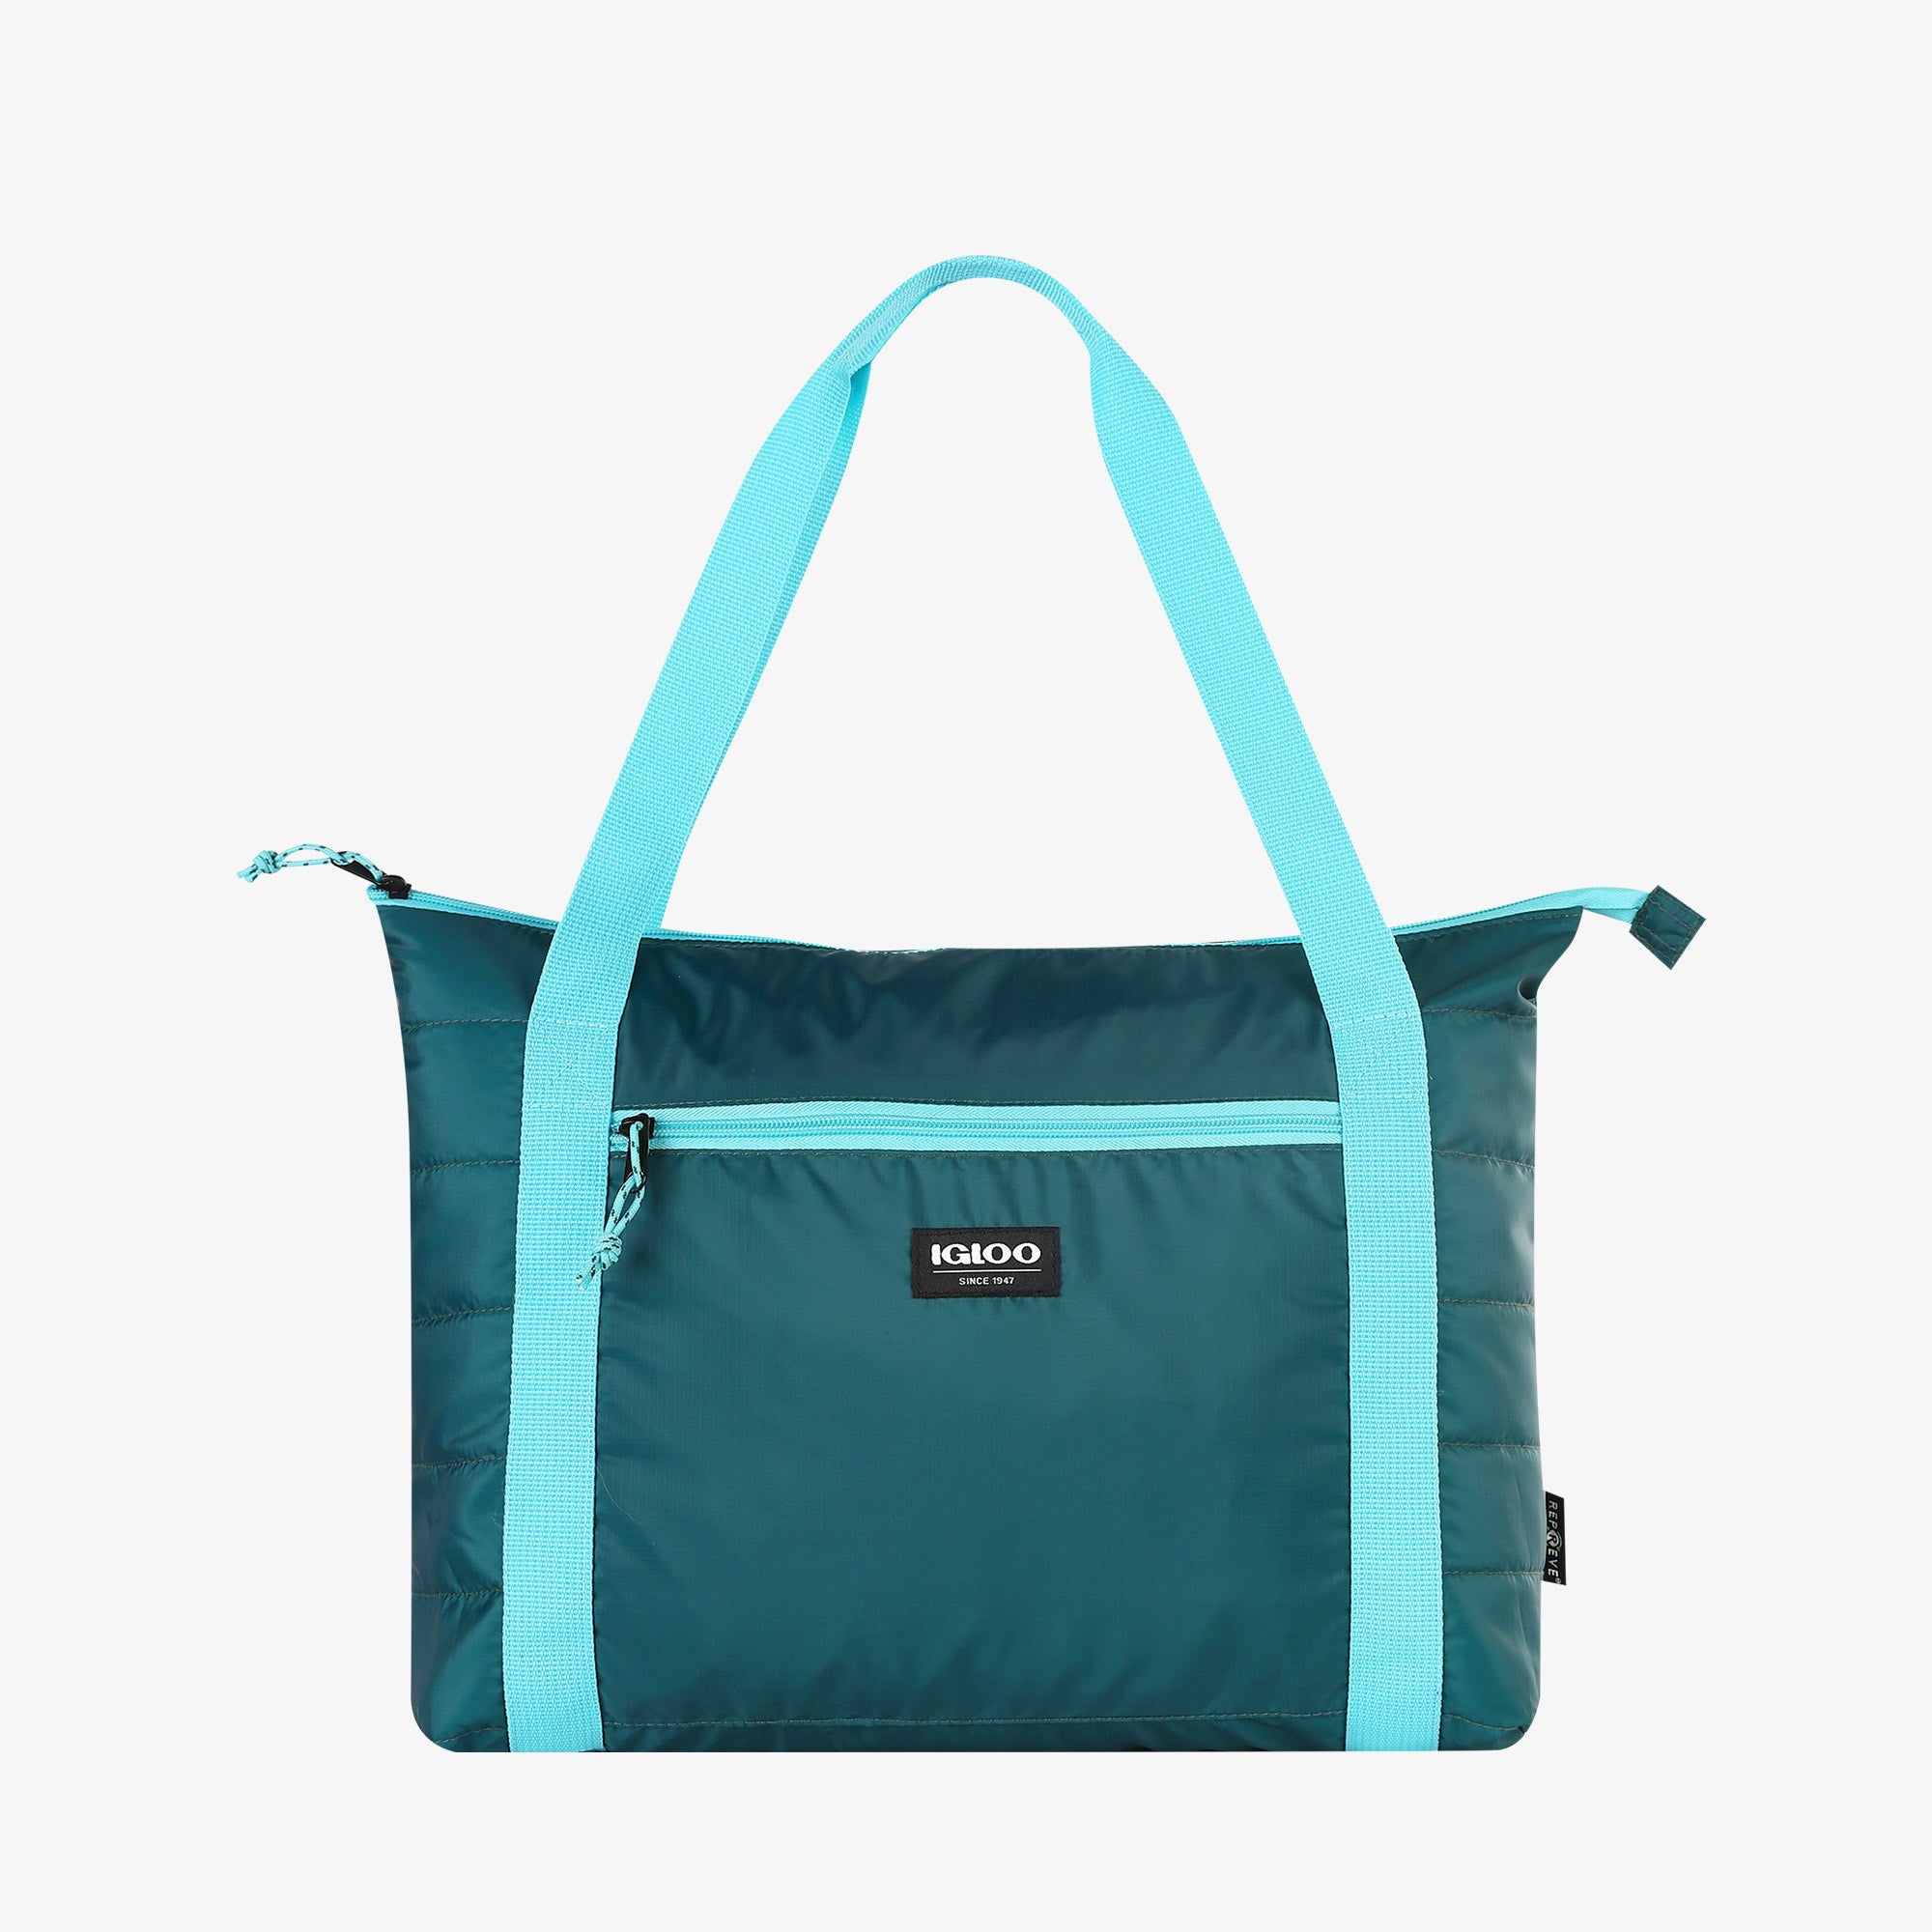 Lightweight 18-Can Insulated Cooler Bag